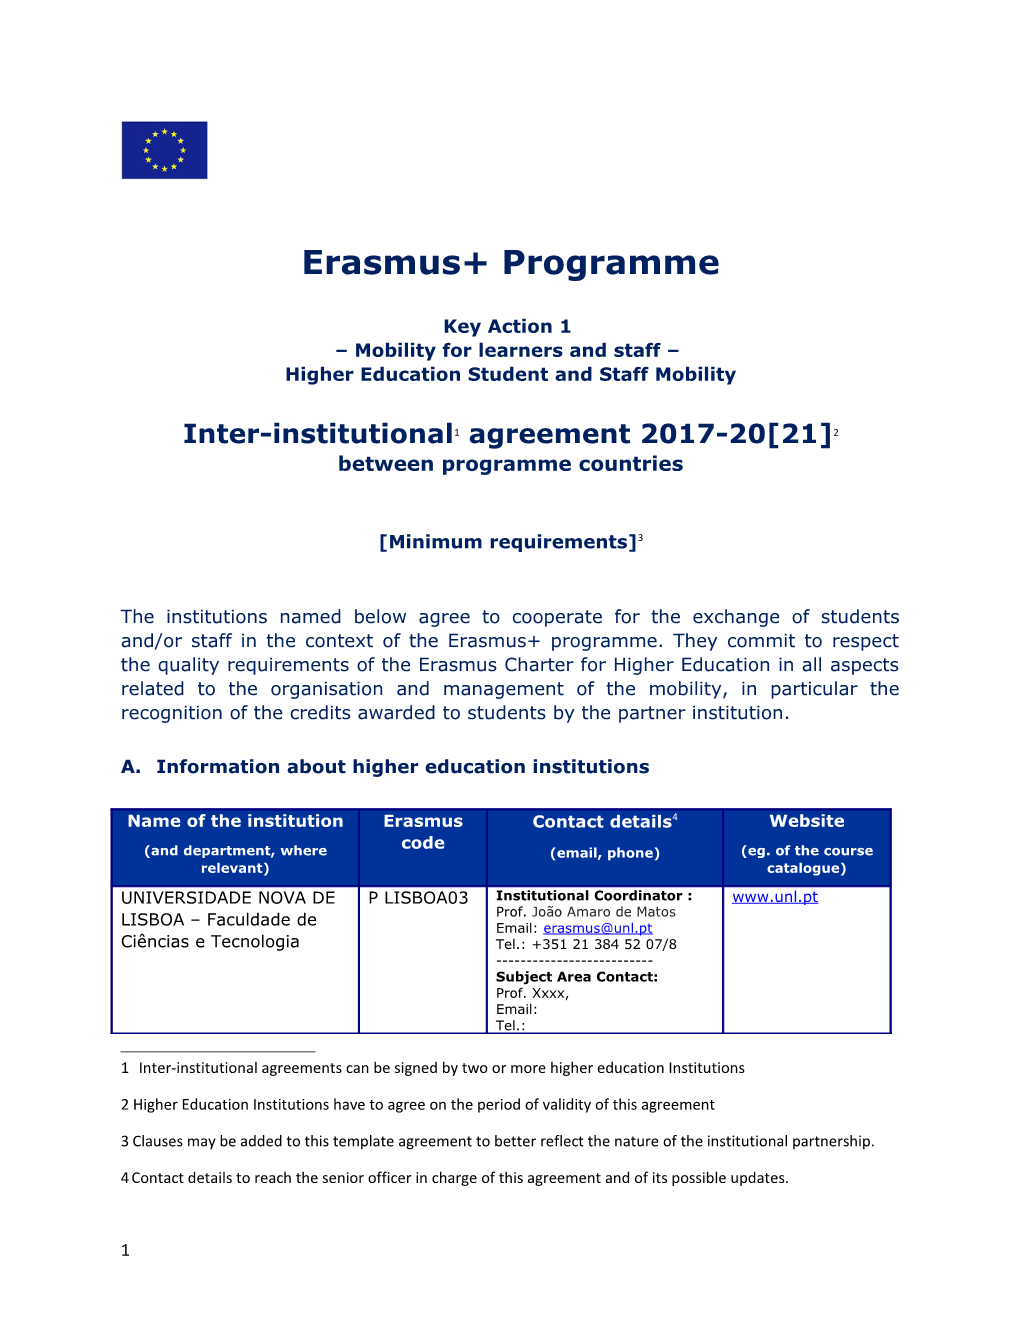 Erasmus+ Programme s1